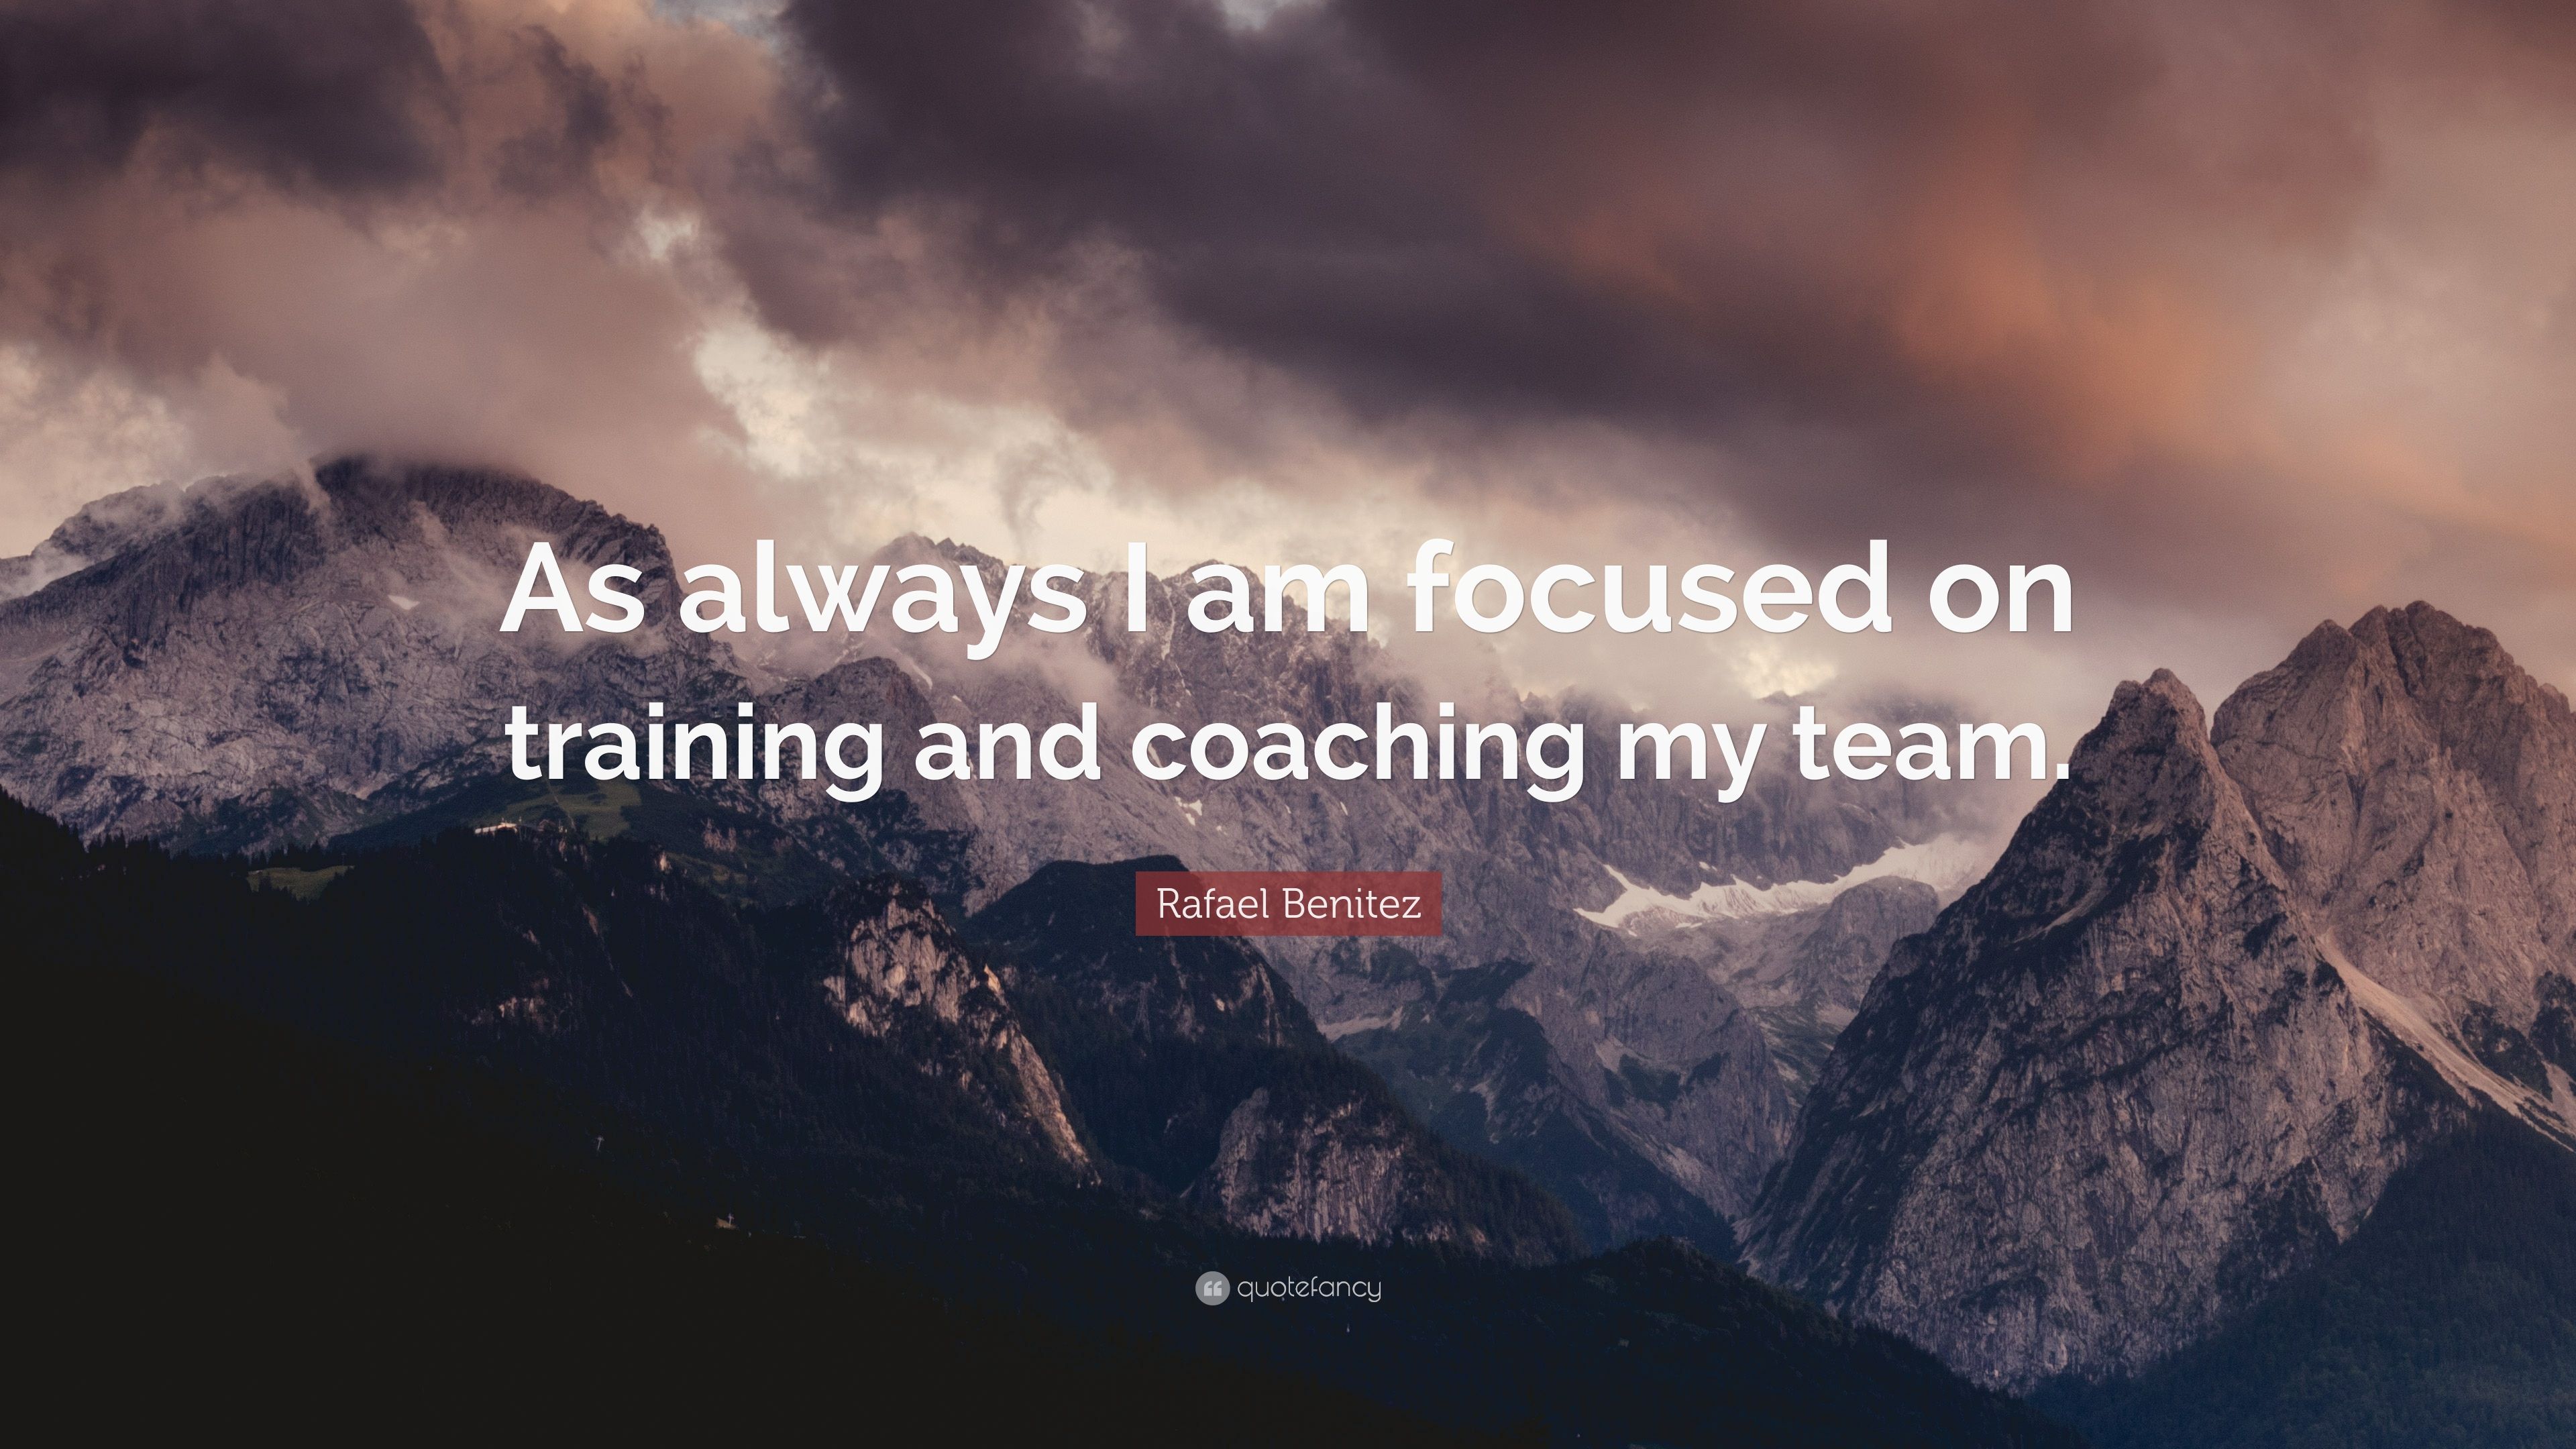 Rafael Benitez Quote: “As always I am focused on training